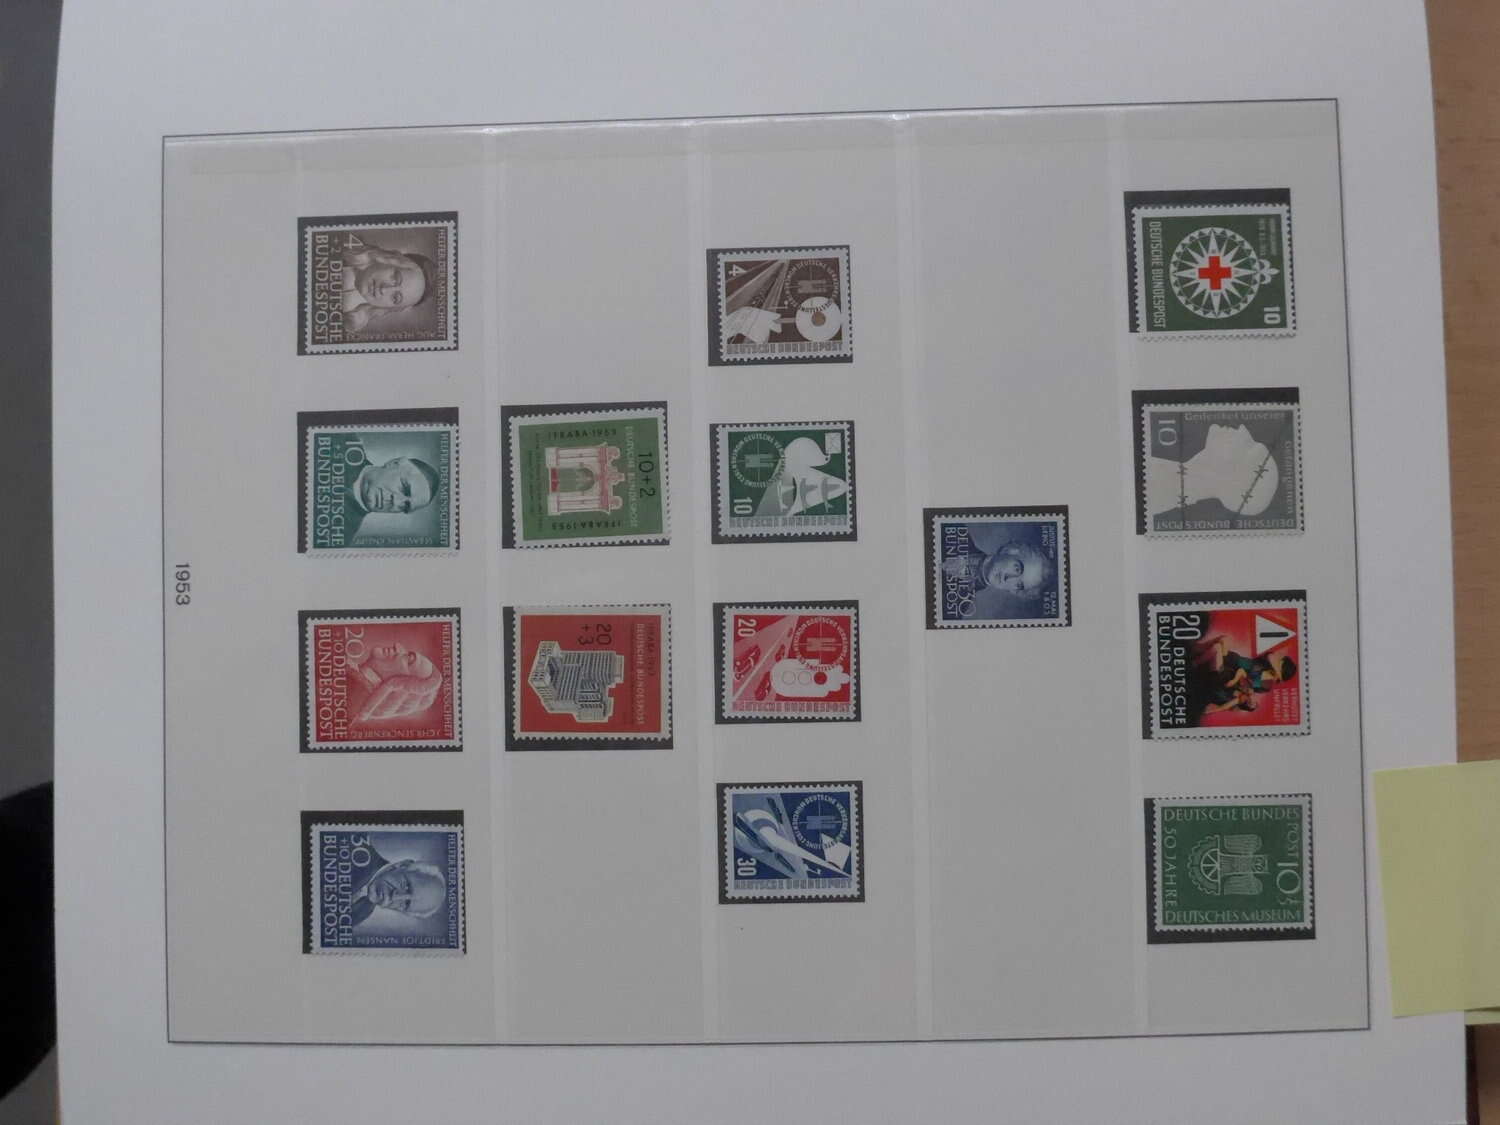 Lot 8 - sammlungen und posten sammlernachlässe -  Deutsche Briefmarken AG 6th Large Lot Auction Deutsche Briefmarken AG